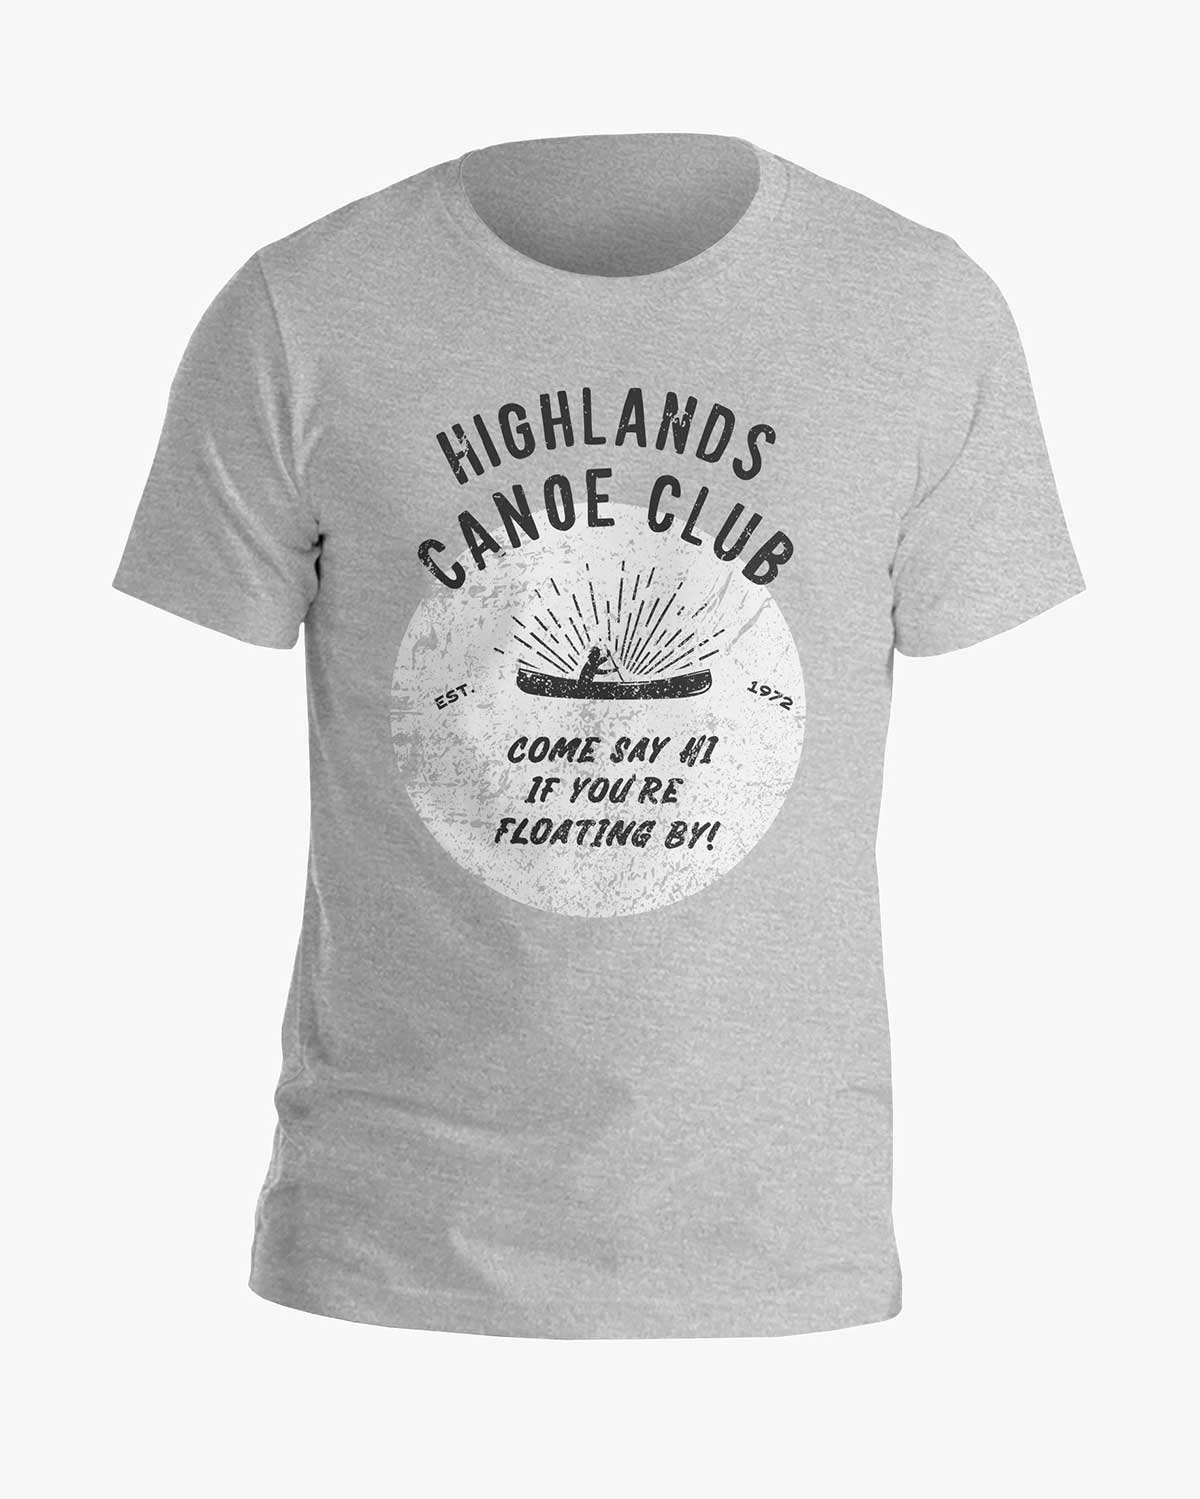 Canoe Club - Highlands - Tee